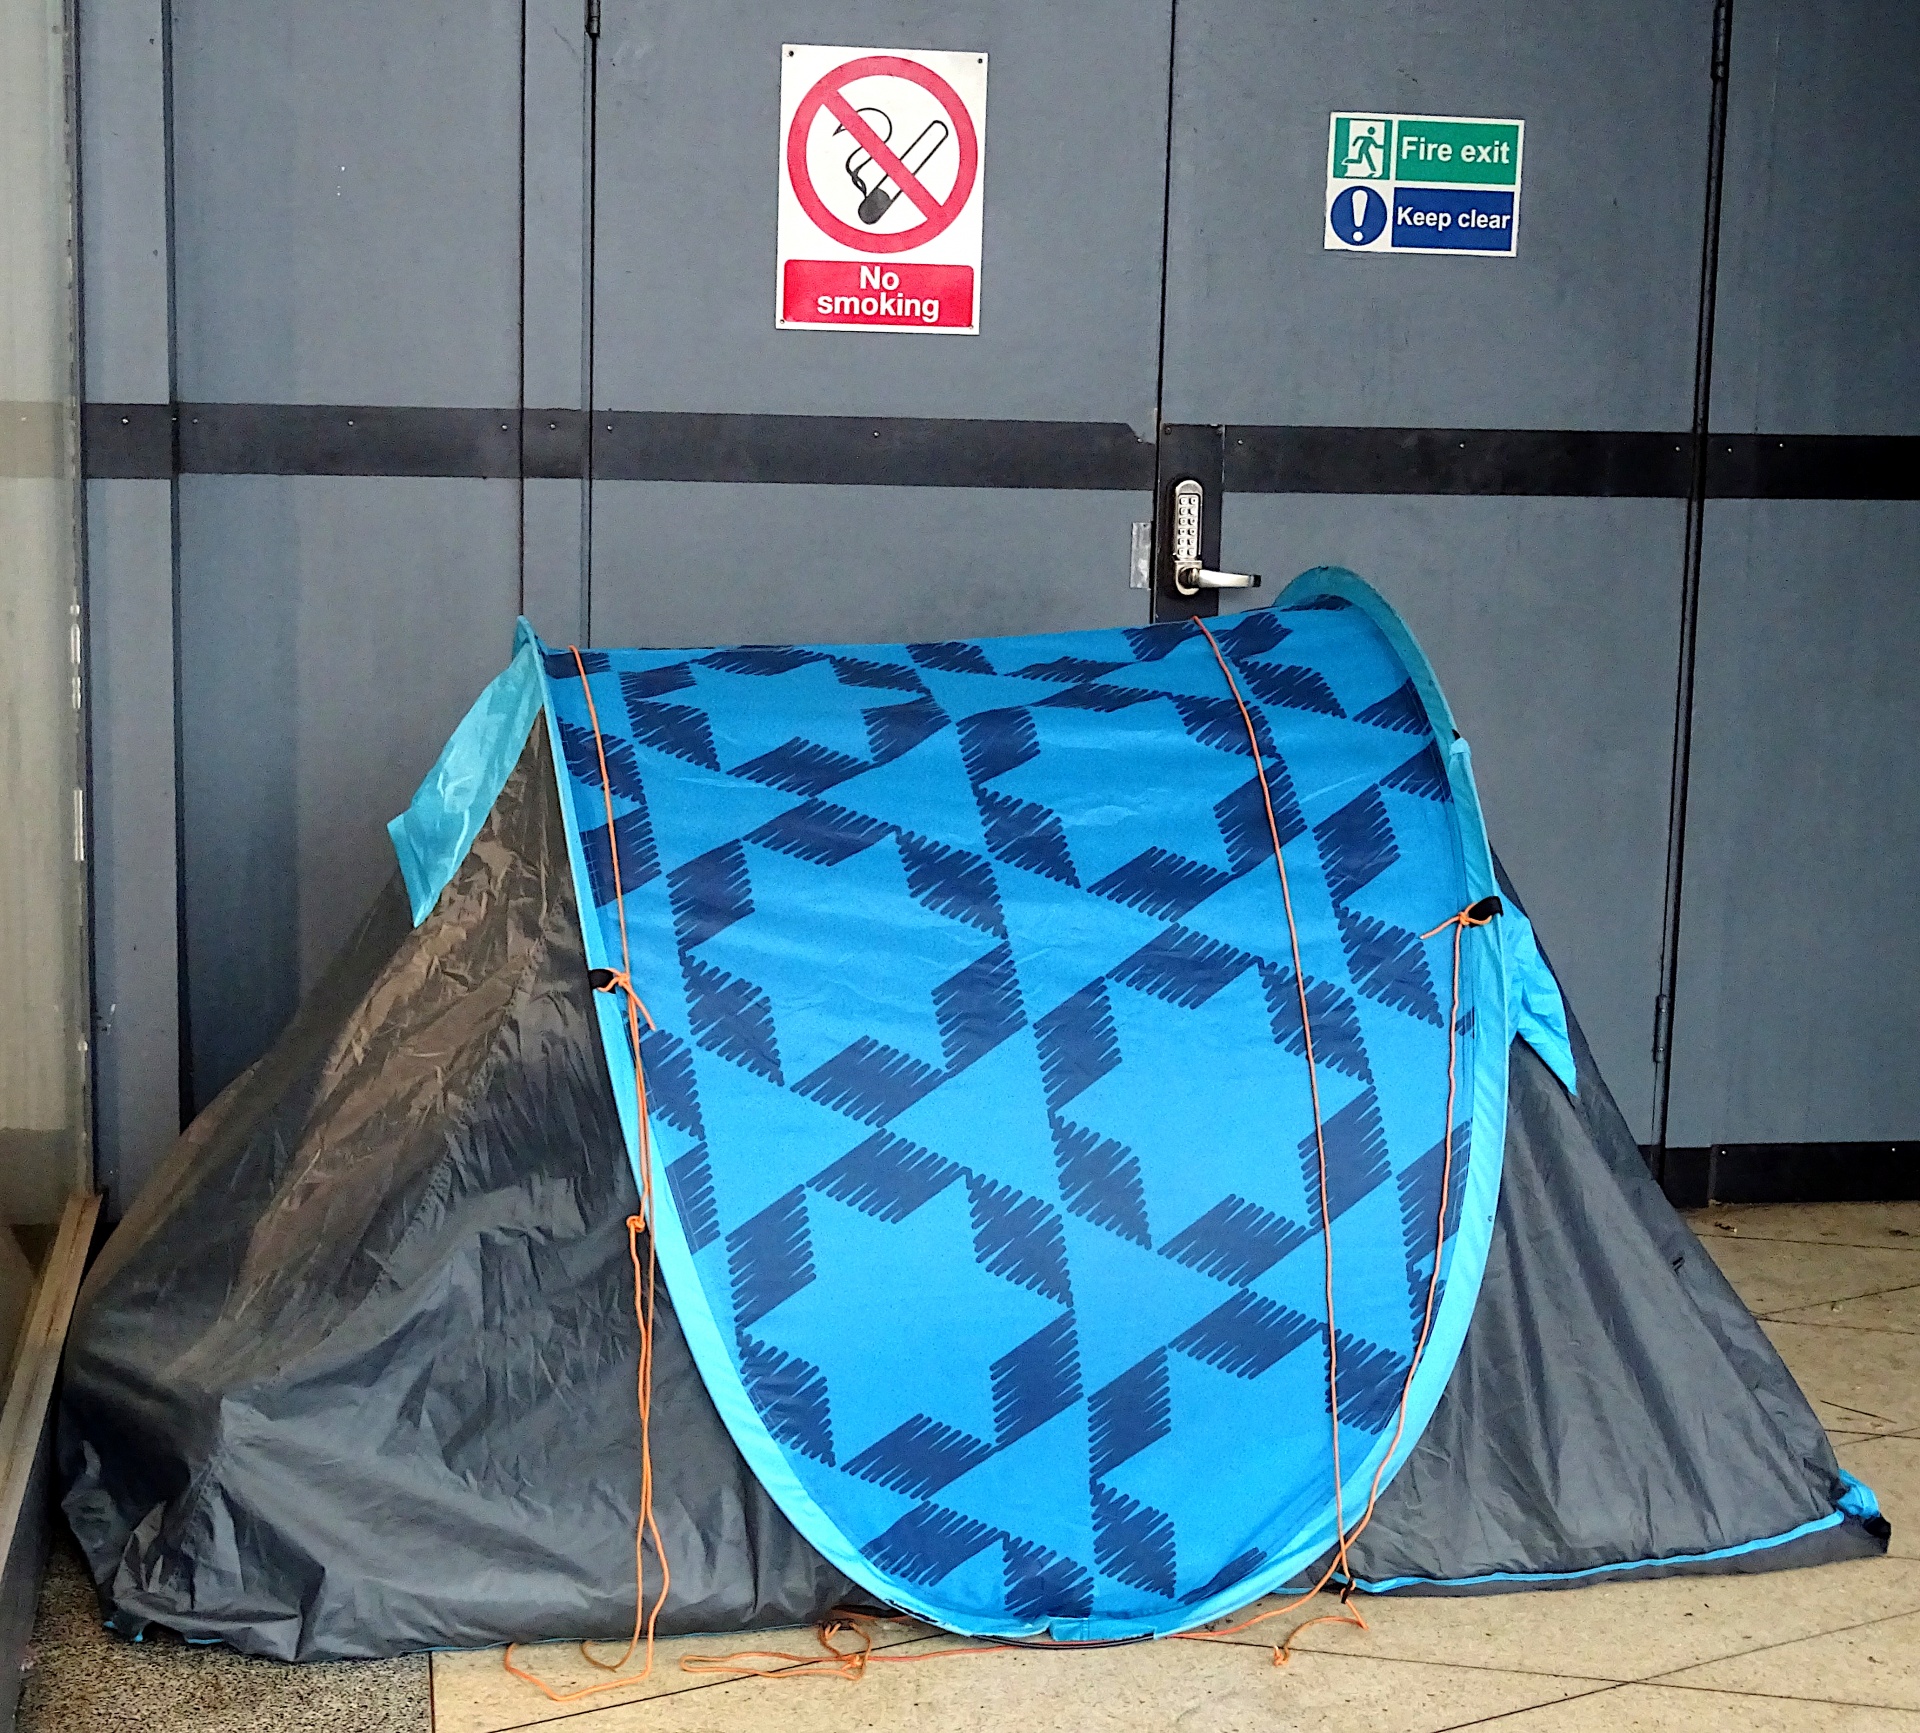 Homeless People In Tent In Doorway